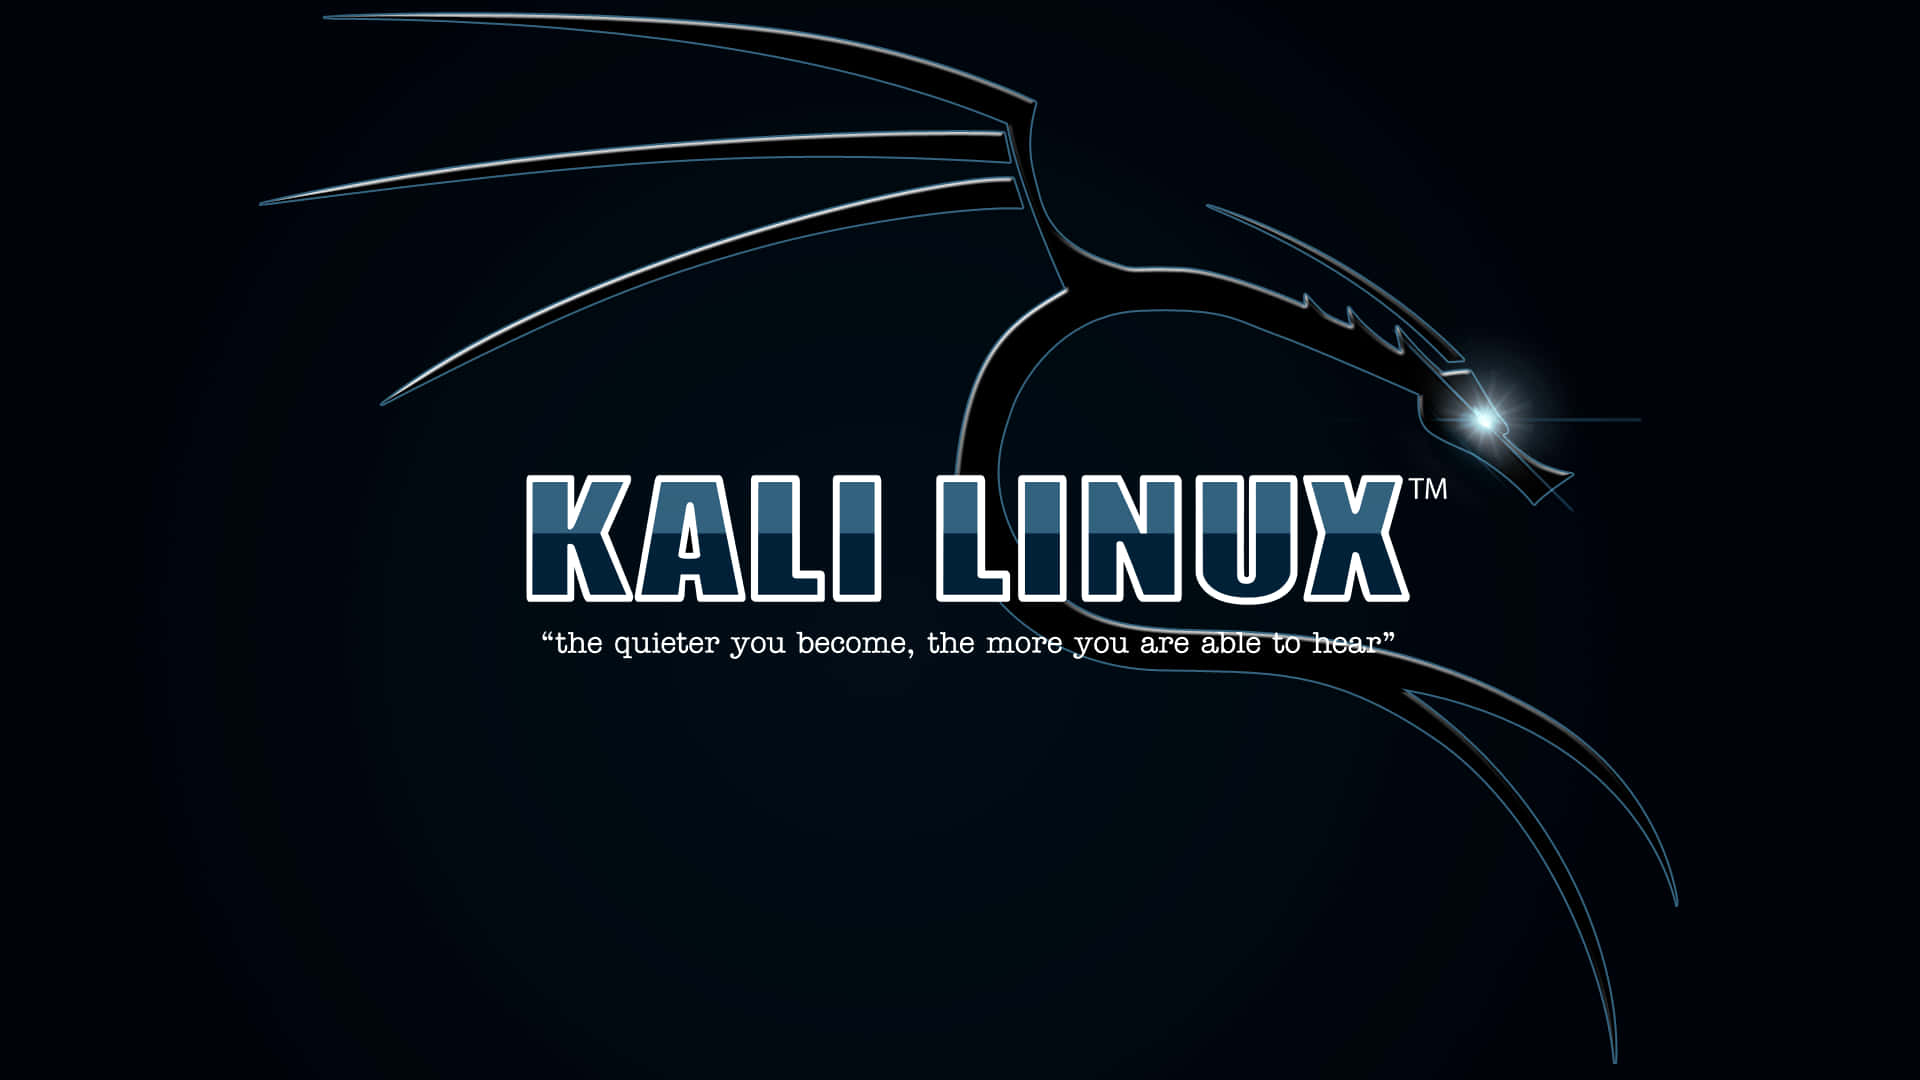 Introduktiontil Den Cyber-sikre Verden Ved Hjælp Af Kali Linux